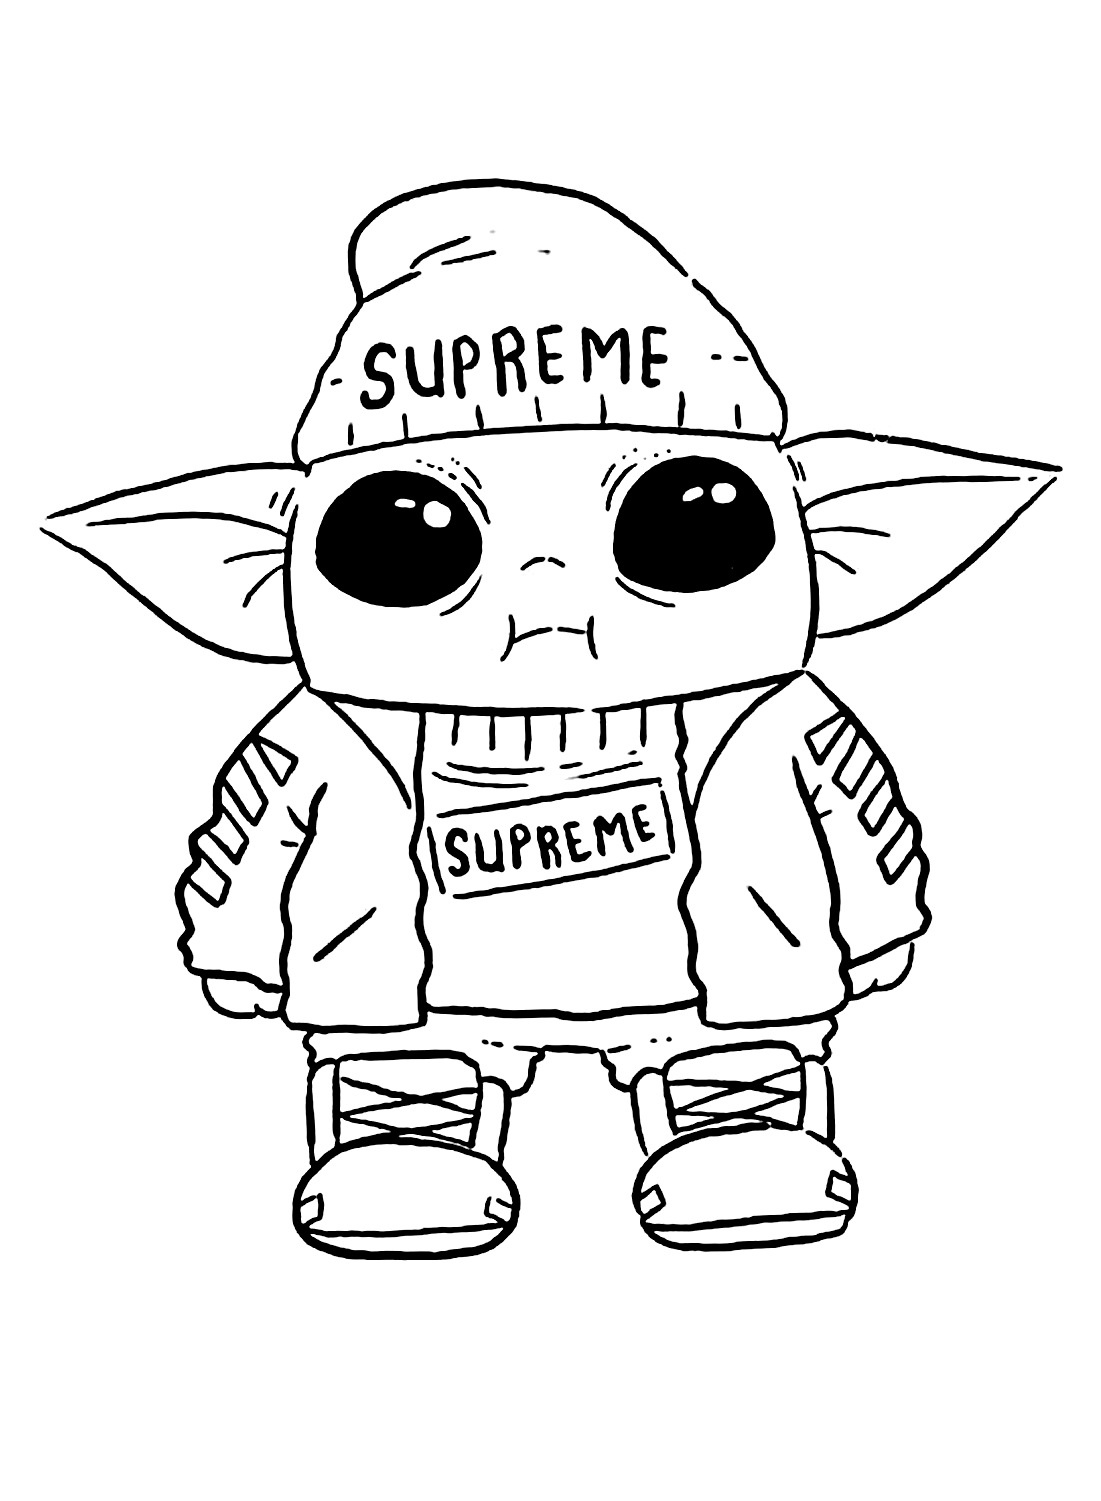 Imagem legal para colorir do bebê Yoda